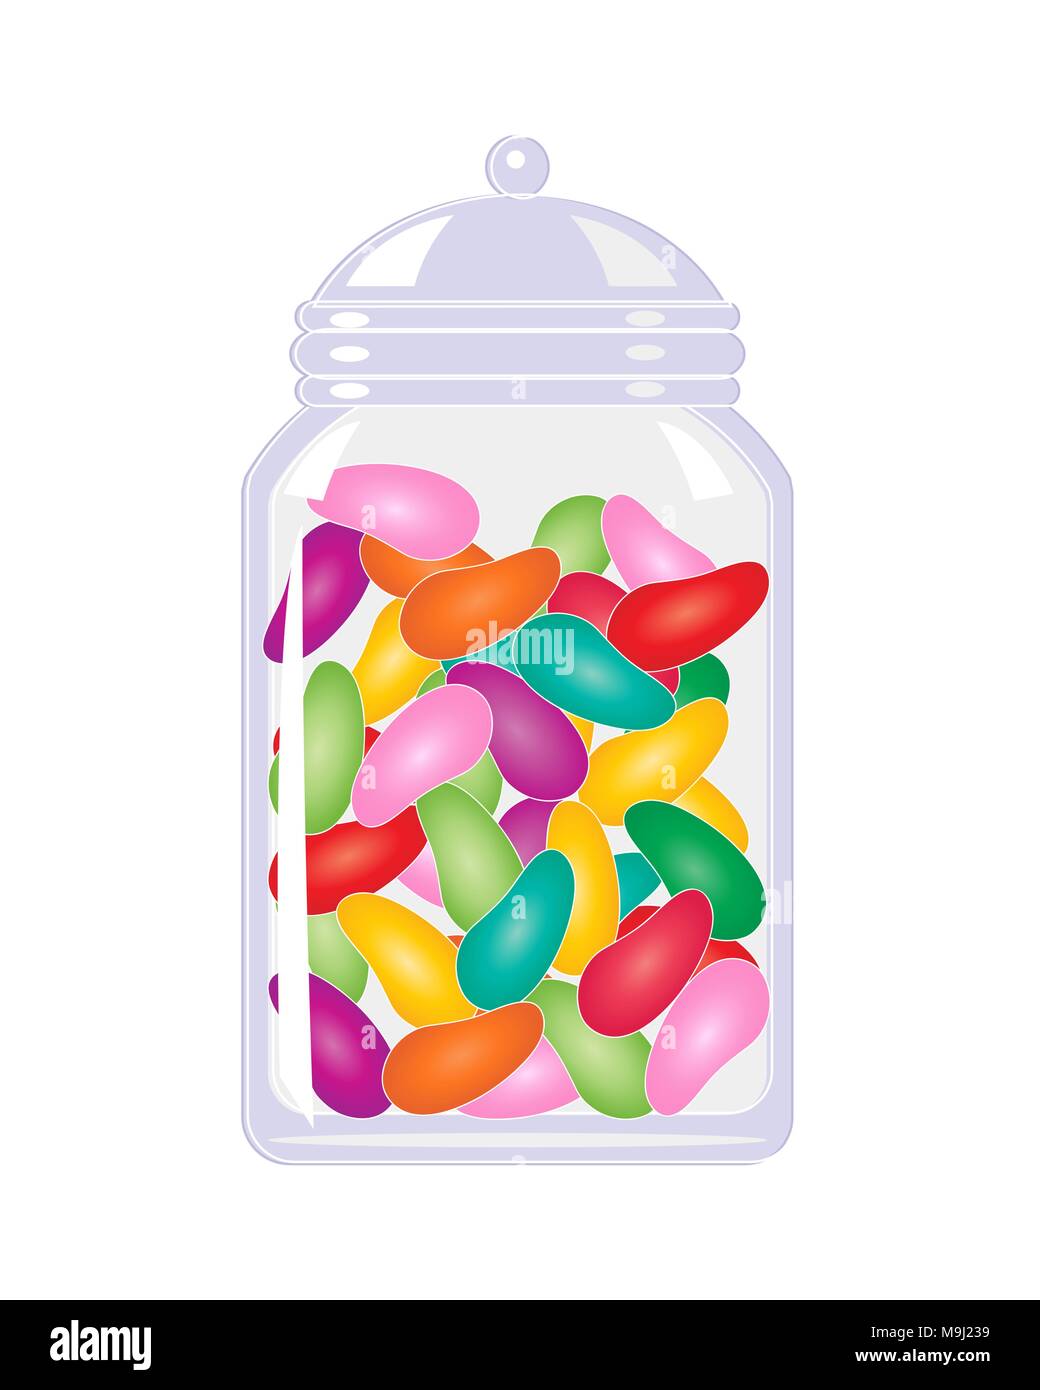 Un vecteur illustration en eps 10 format d'un bocal de bonbons bonbons haricots colorés isolé sur fond blanc Illustration de Vecteur